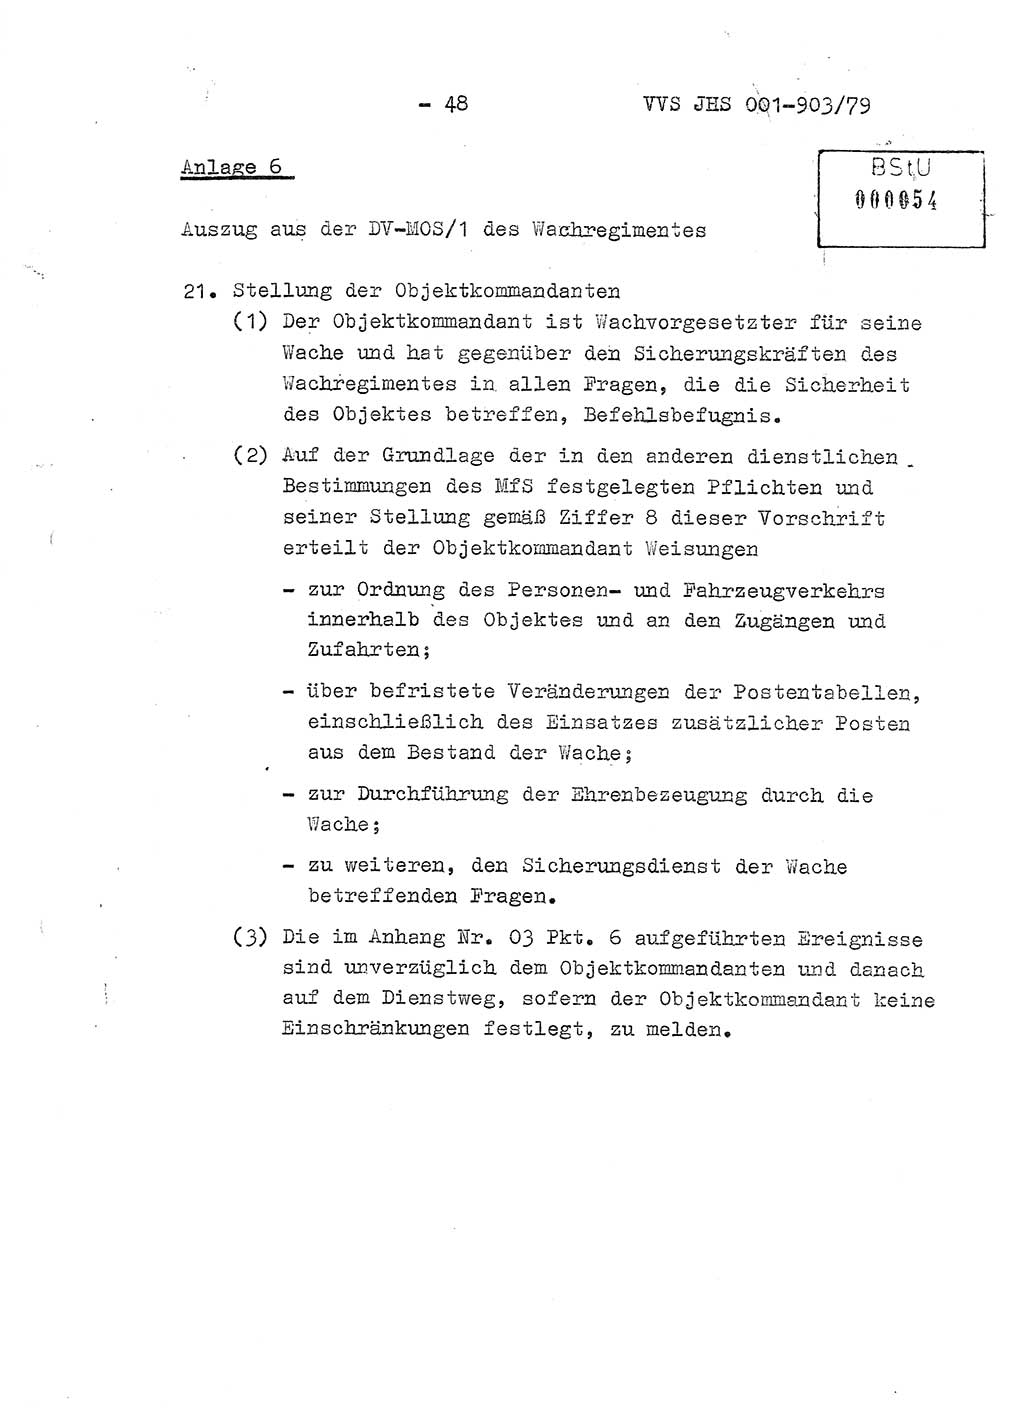 Fachschulabschlußarbeit Oberleutnant Jochen Pfeffer (HA Ⅸ/AGL), Ministerium für Staatssicherheit (MfS) [Deutsche Demokratische Republik (DDR)], Juristische Hochschule (JHS), Vertrauliche Verschlußsache (VVS) 001-903/79, Potsdam 1979, Seite 48 (FS-Abschl.-Arb. MfS DDR JHS VVS 001-903/79 1979, S. 48)